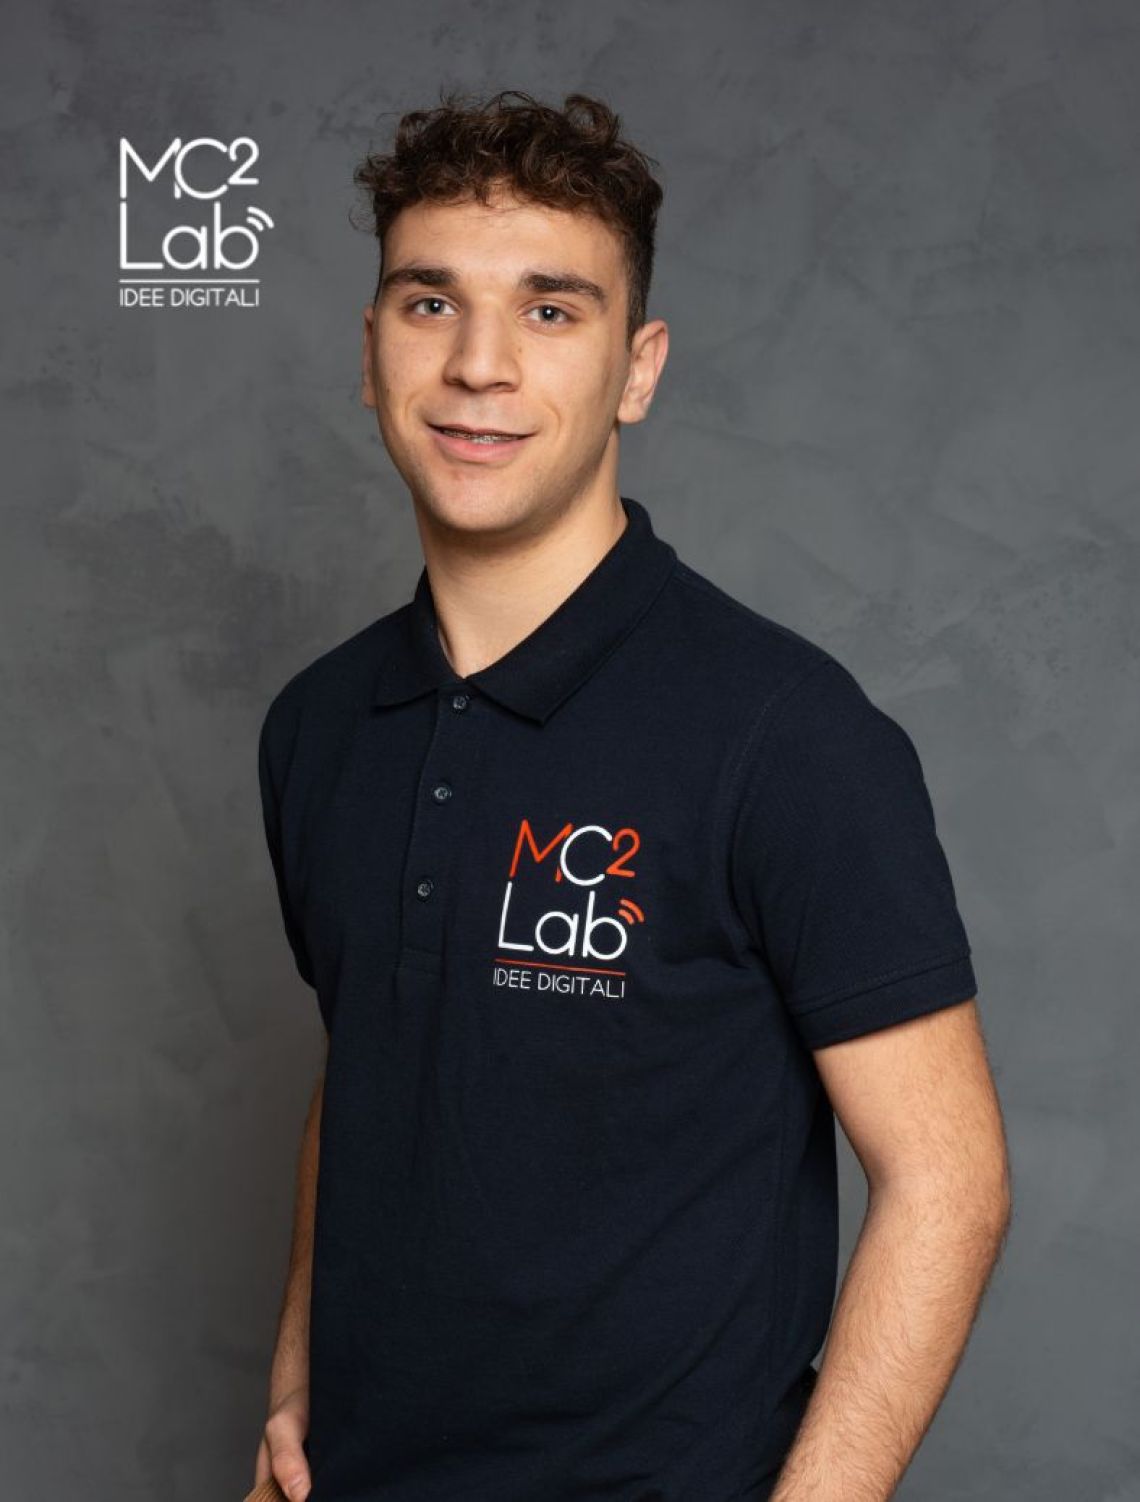 Emanuele MC2 Lab srl